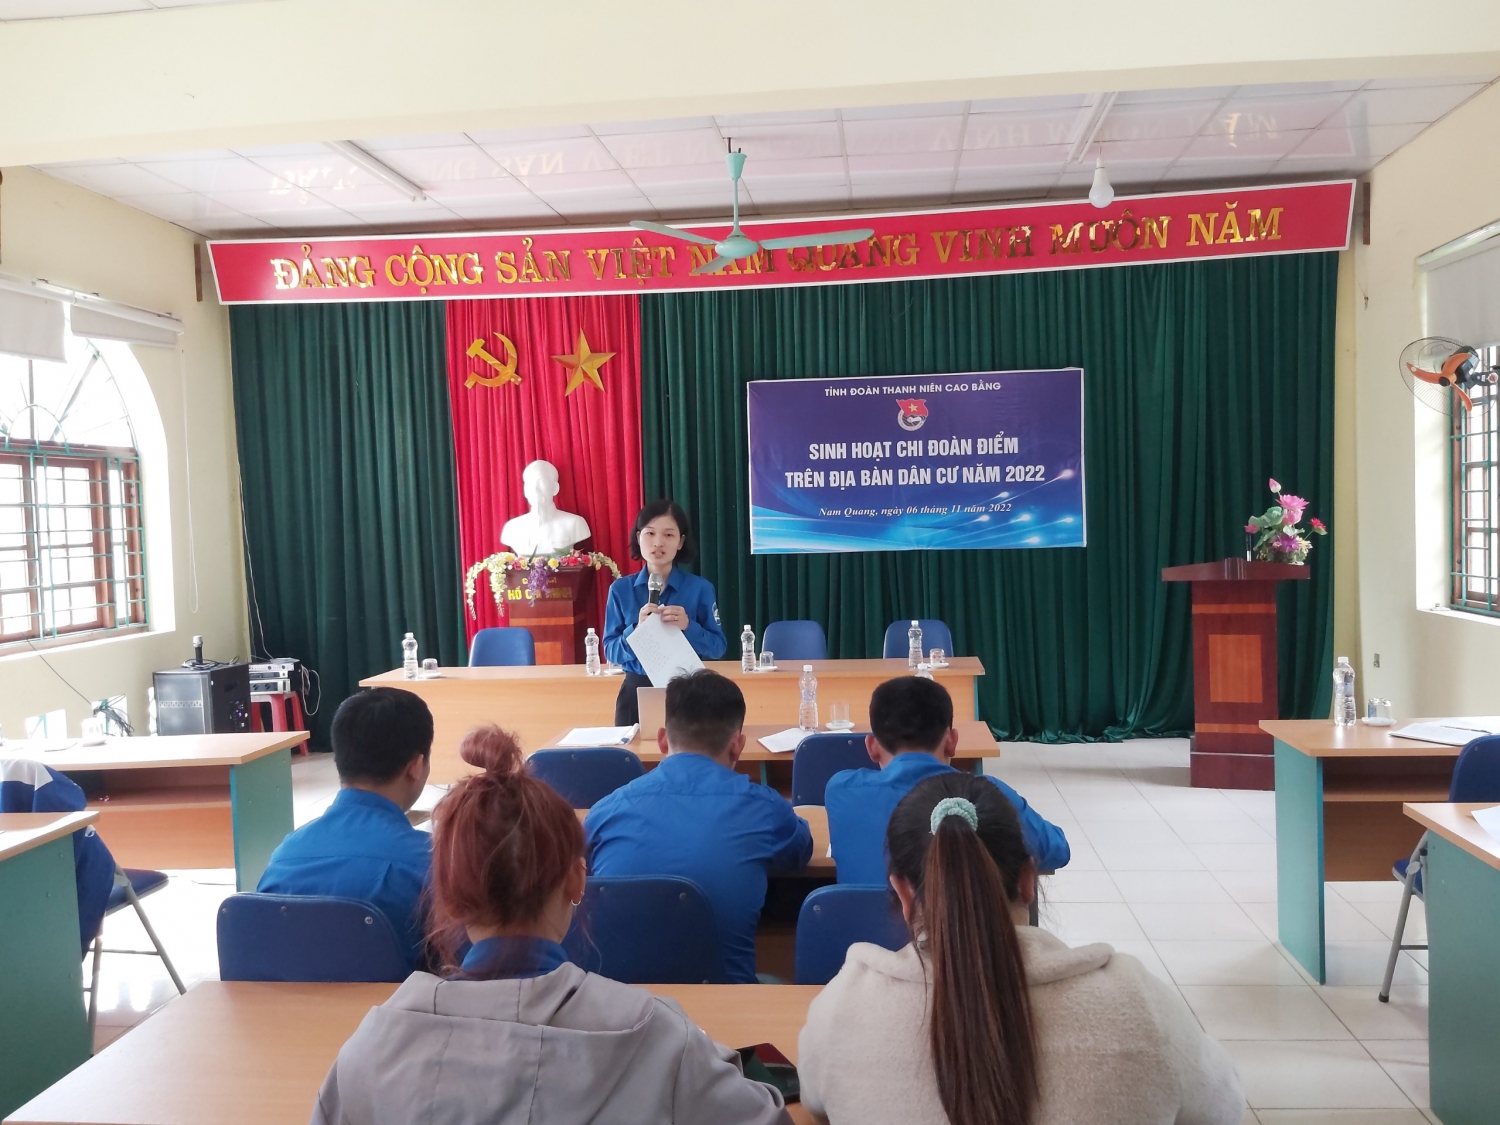 Sinh hoạt chi đoàn điểm tại xã Nam Quang